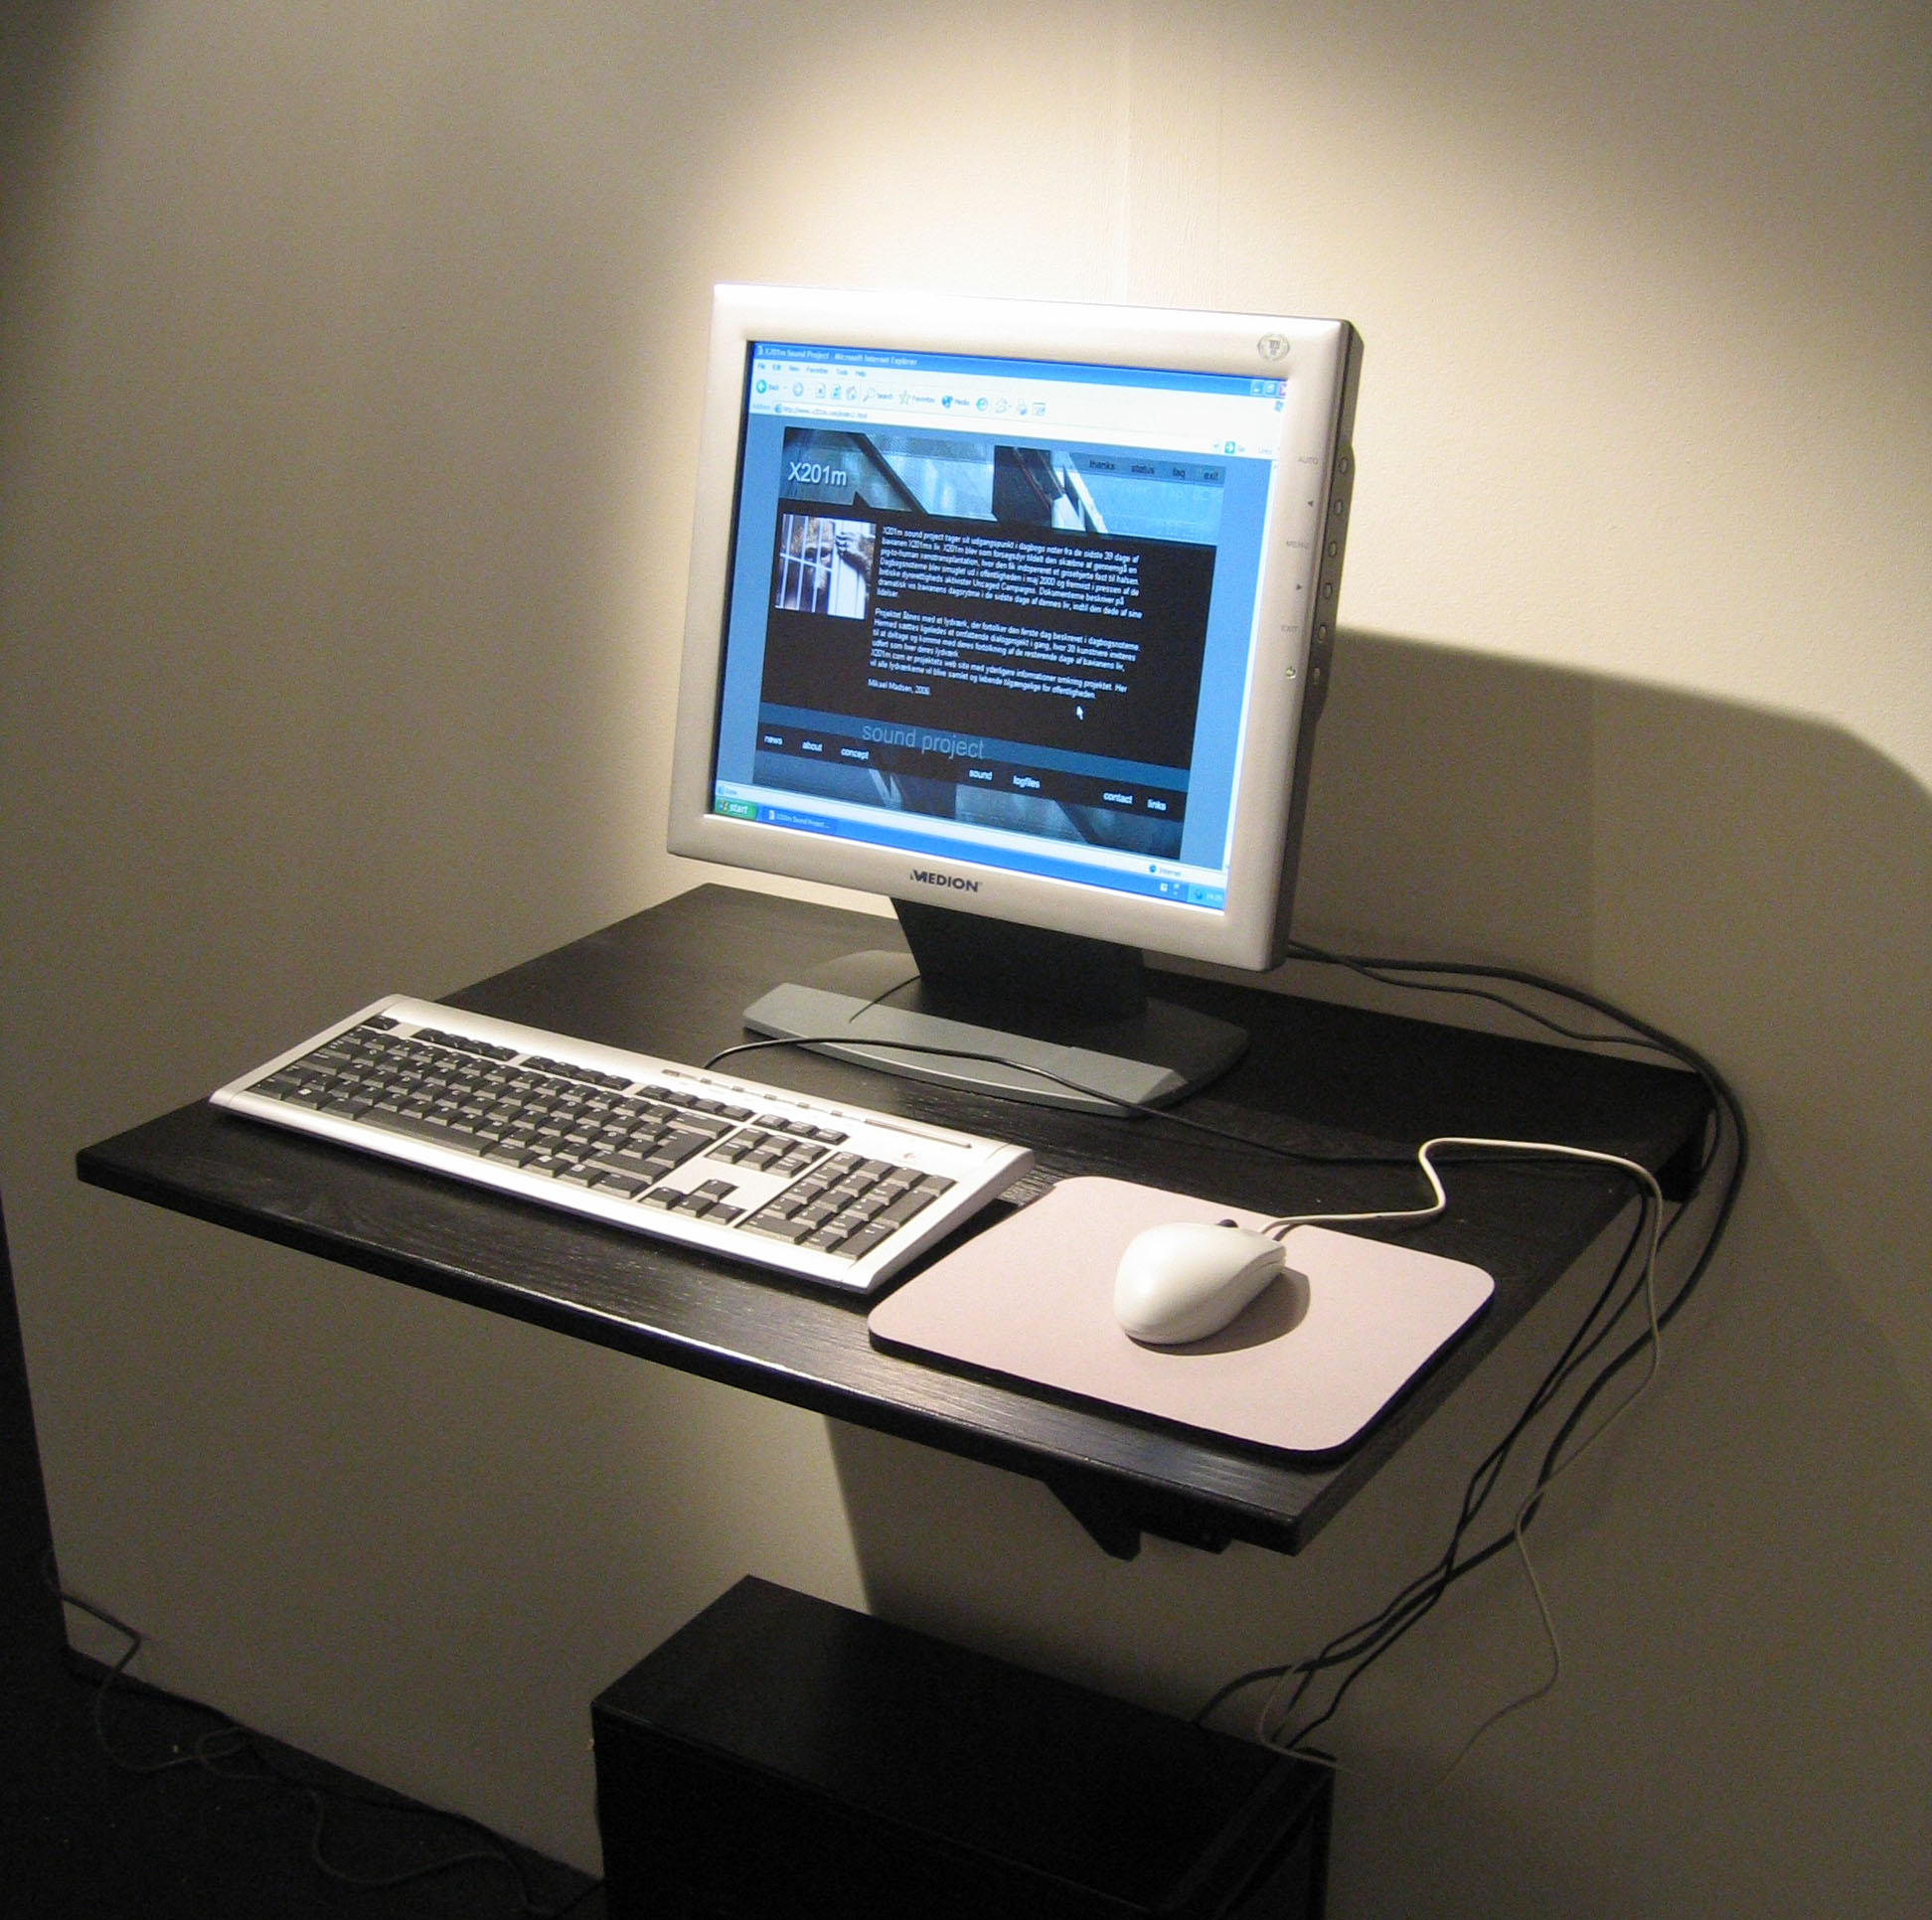 X201m Sound Project webpage - Exhibited at SpLab - Special Laboratorium for kunst og offentlighed - Det Jyske Kunstakademi 2006